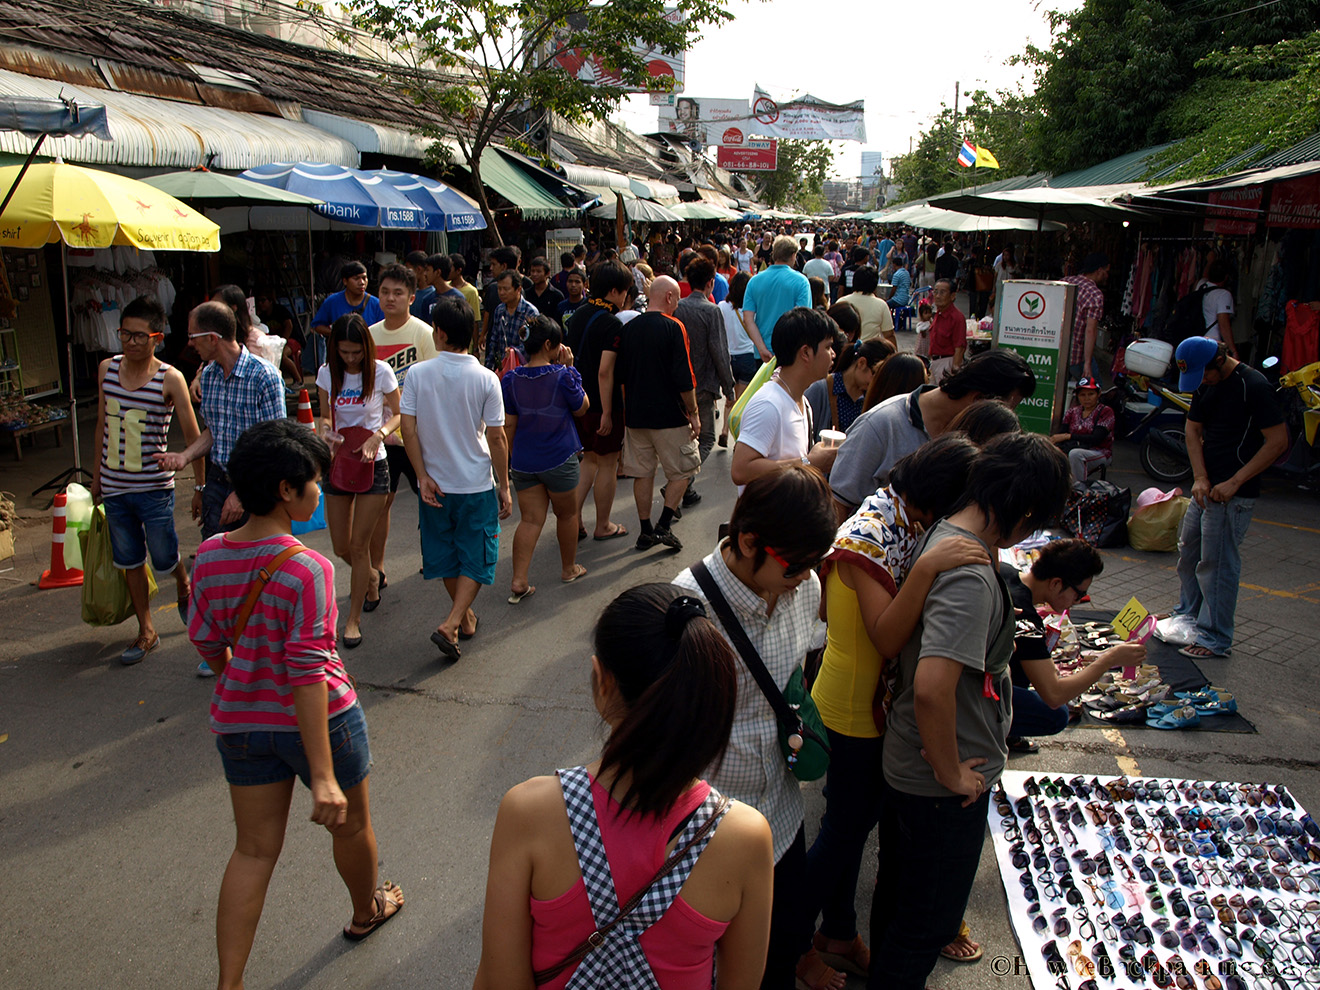 Weekend Market Bangkok